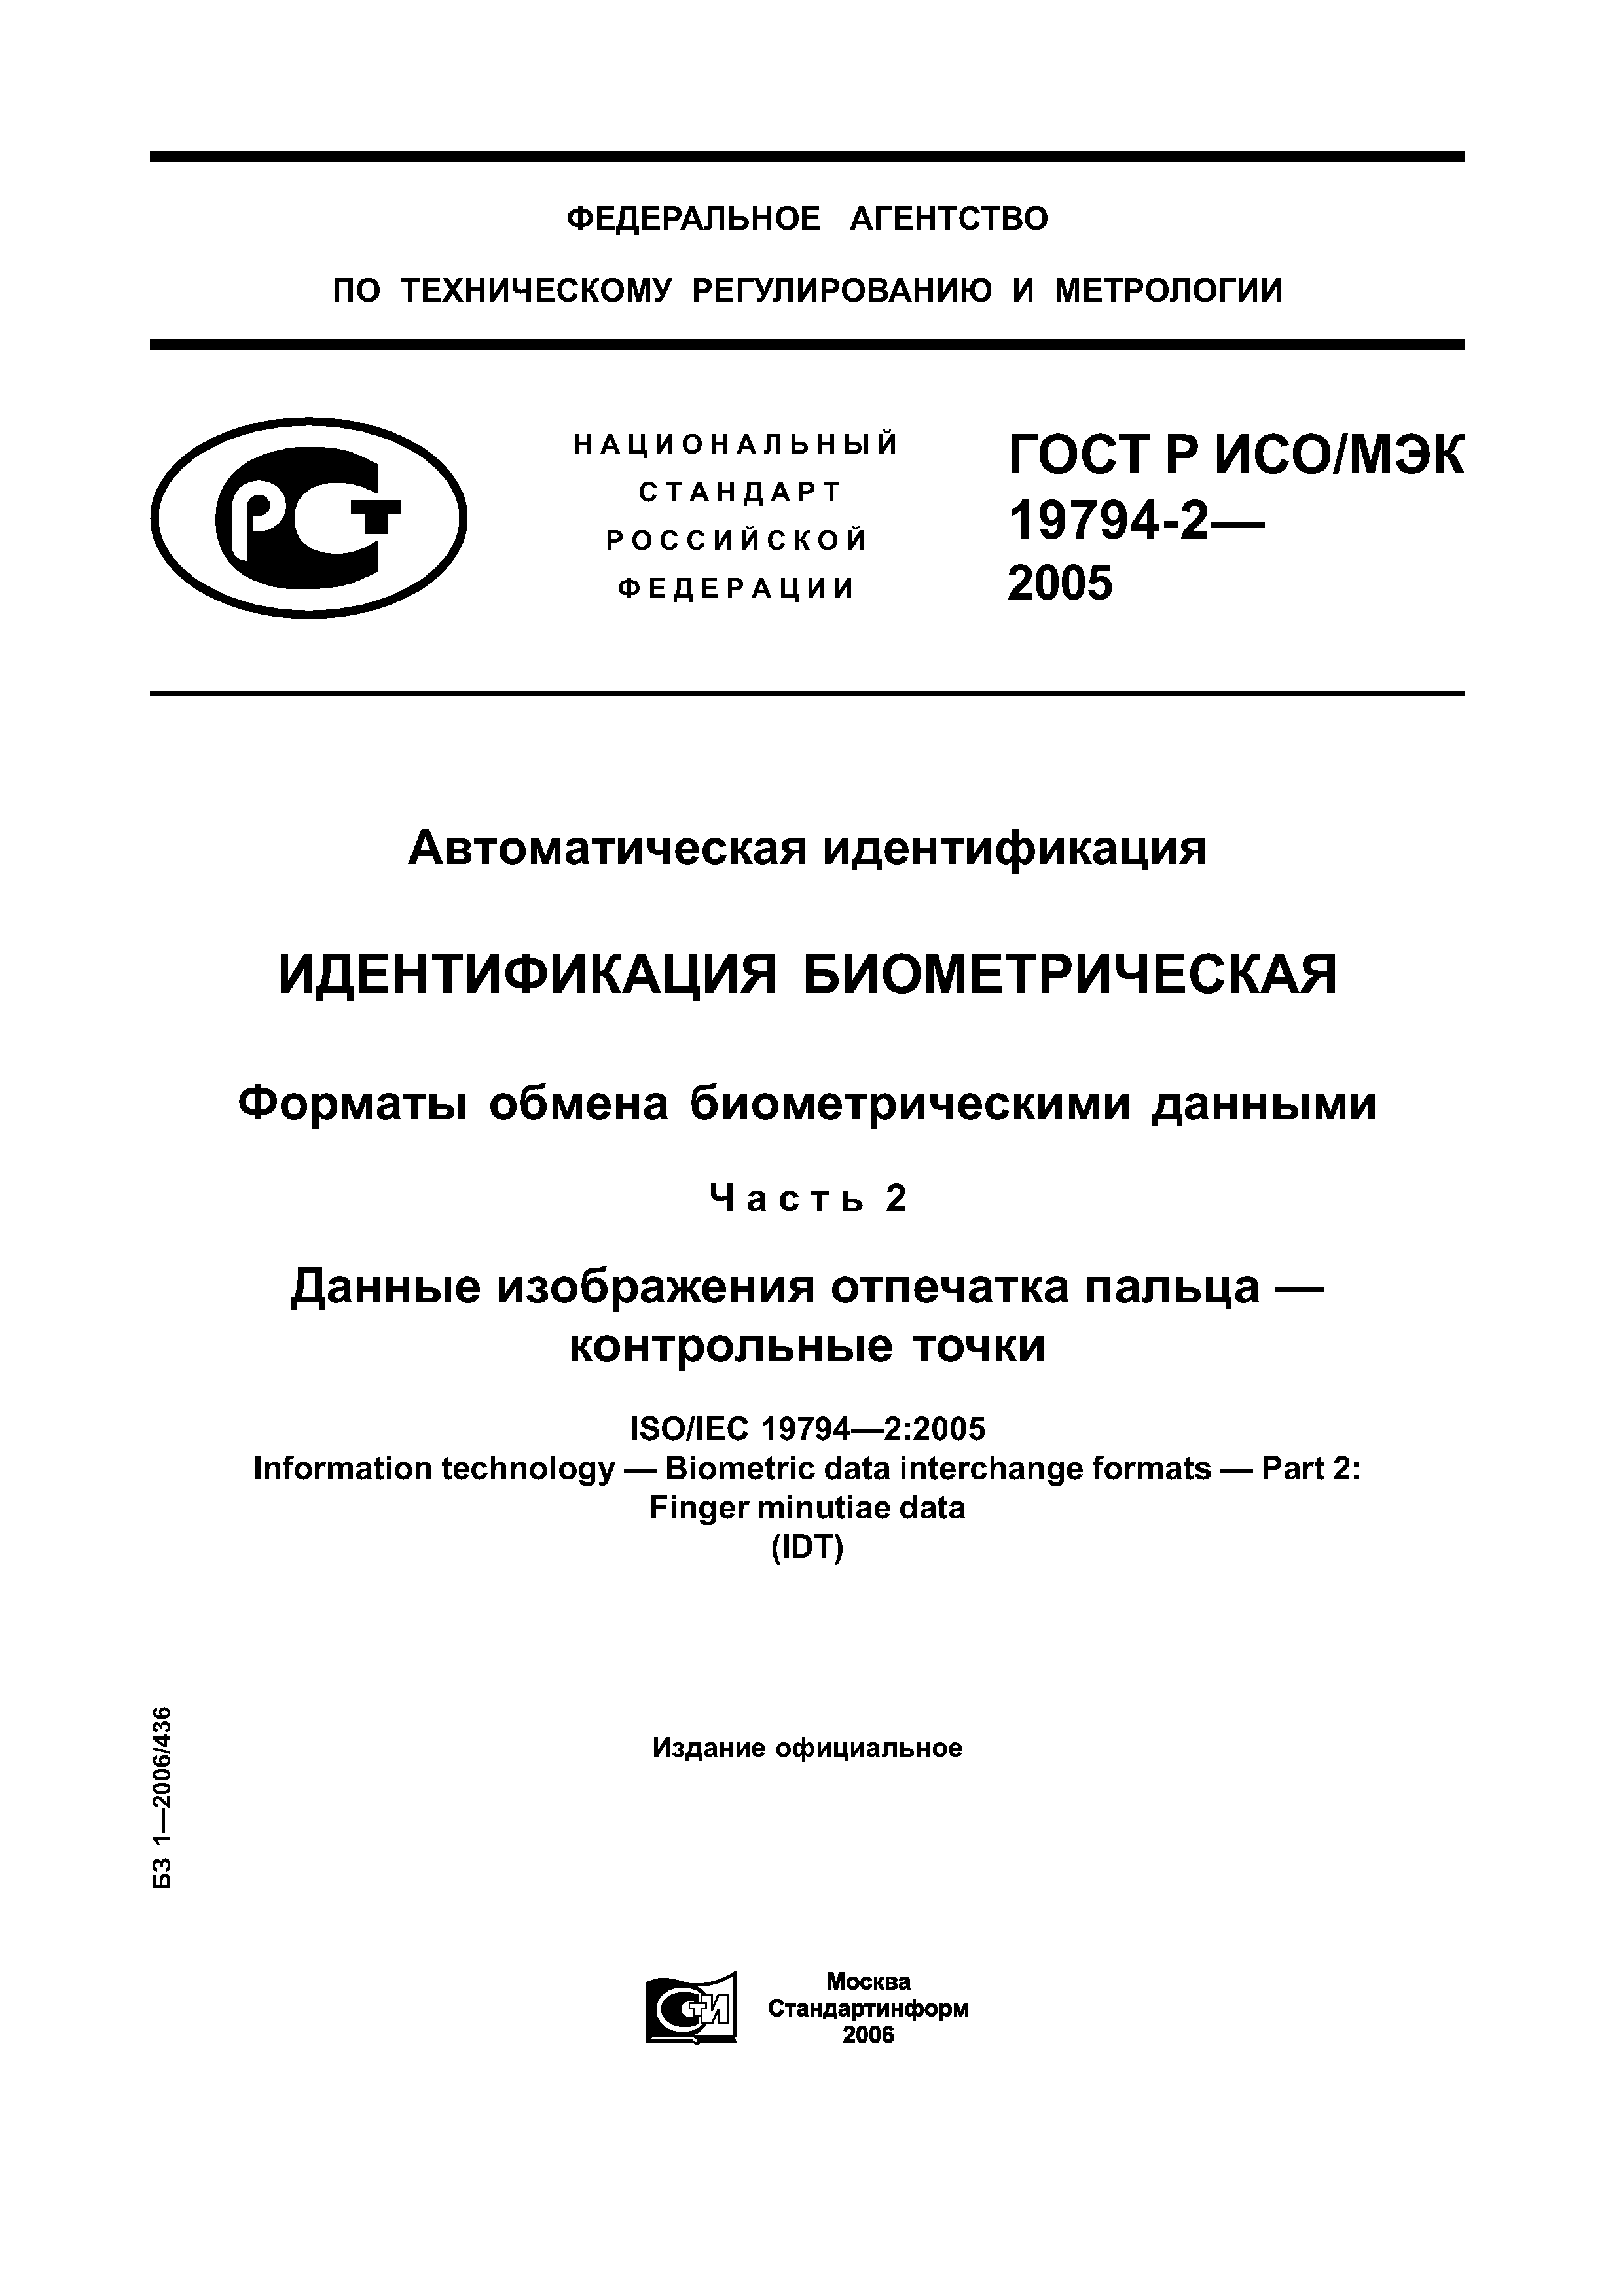 ГОСТ Р ИСО/МЭК 19794-2-2005